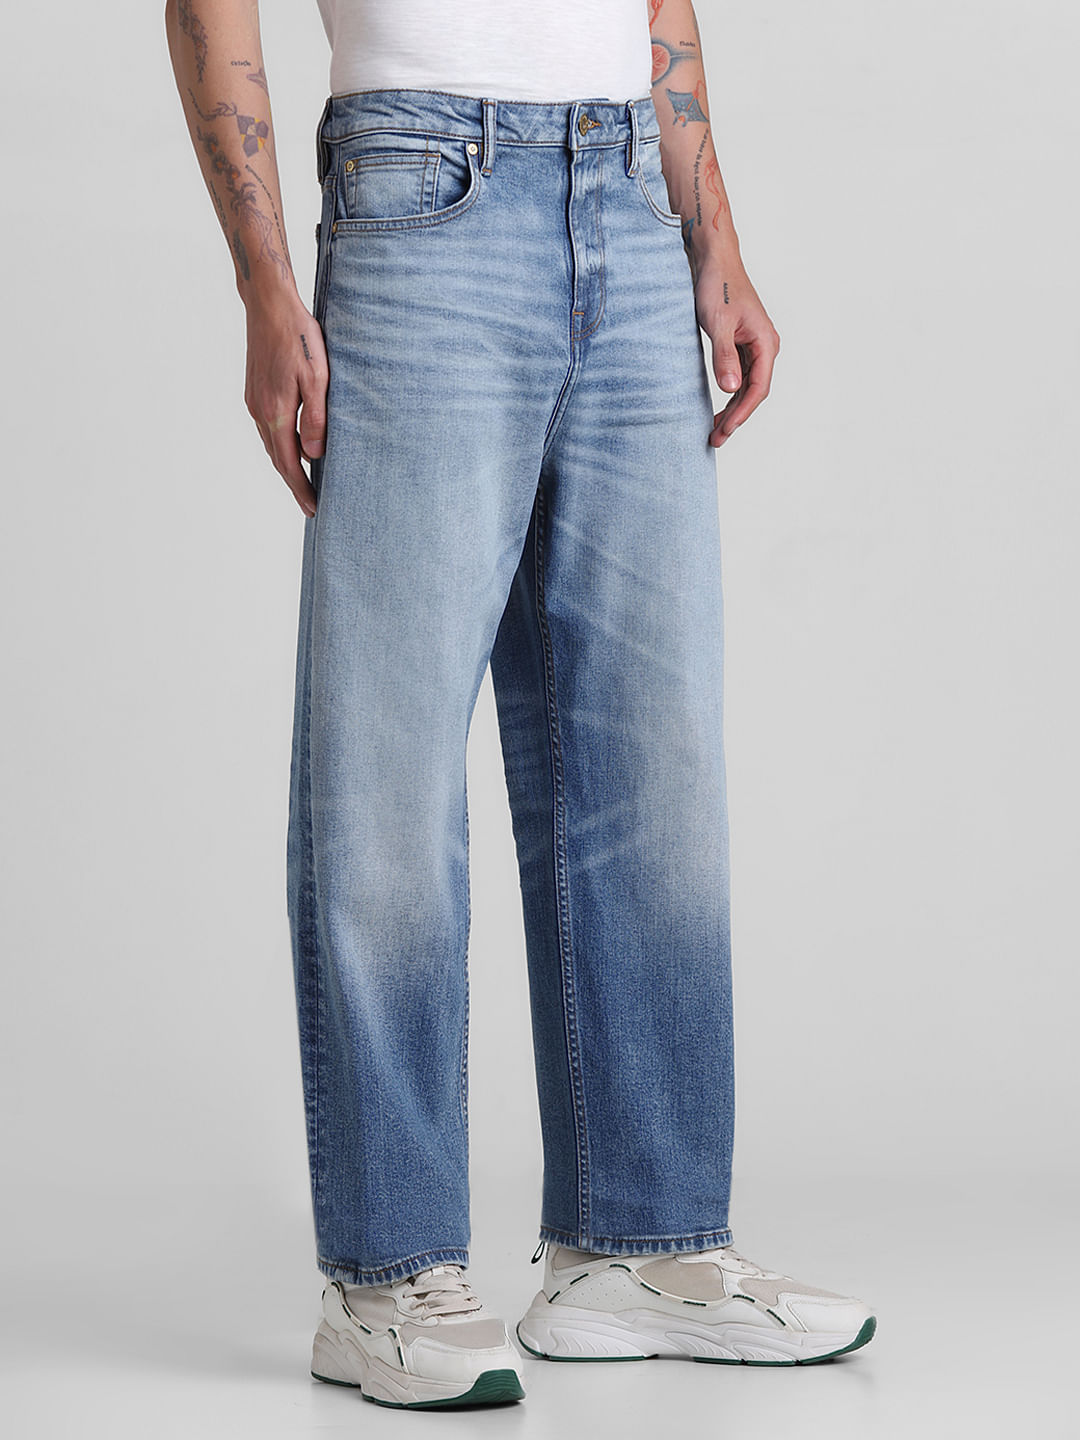 Feather Soft Straight Regular Jeans - Dark denim blue - Ladies | H&M IN